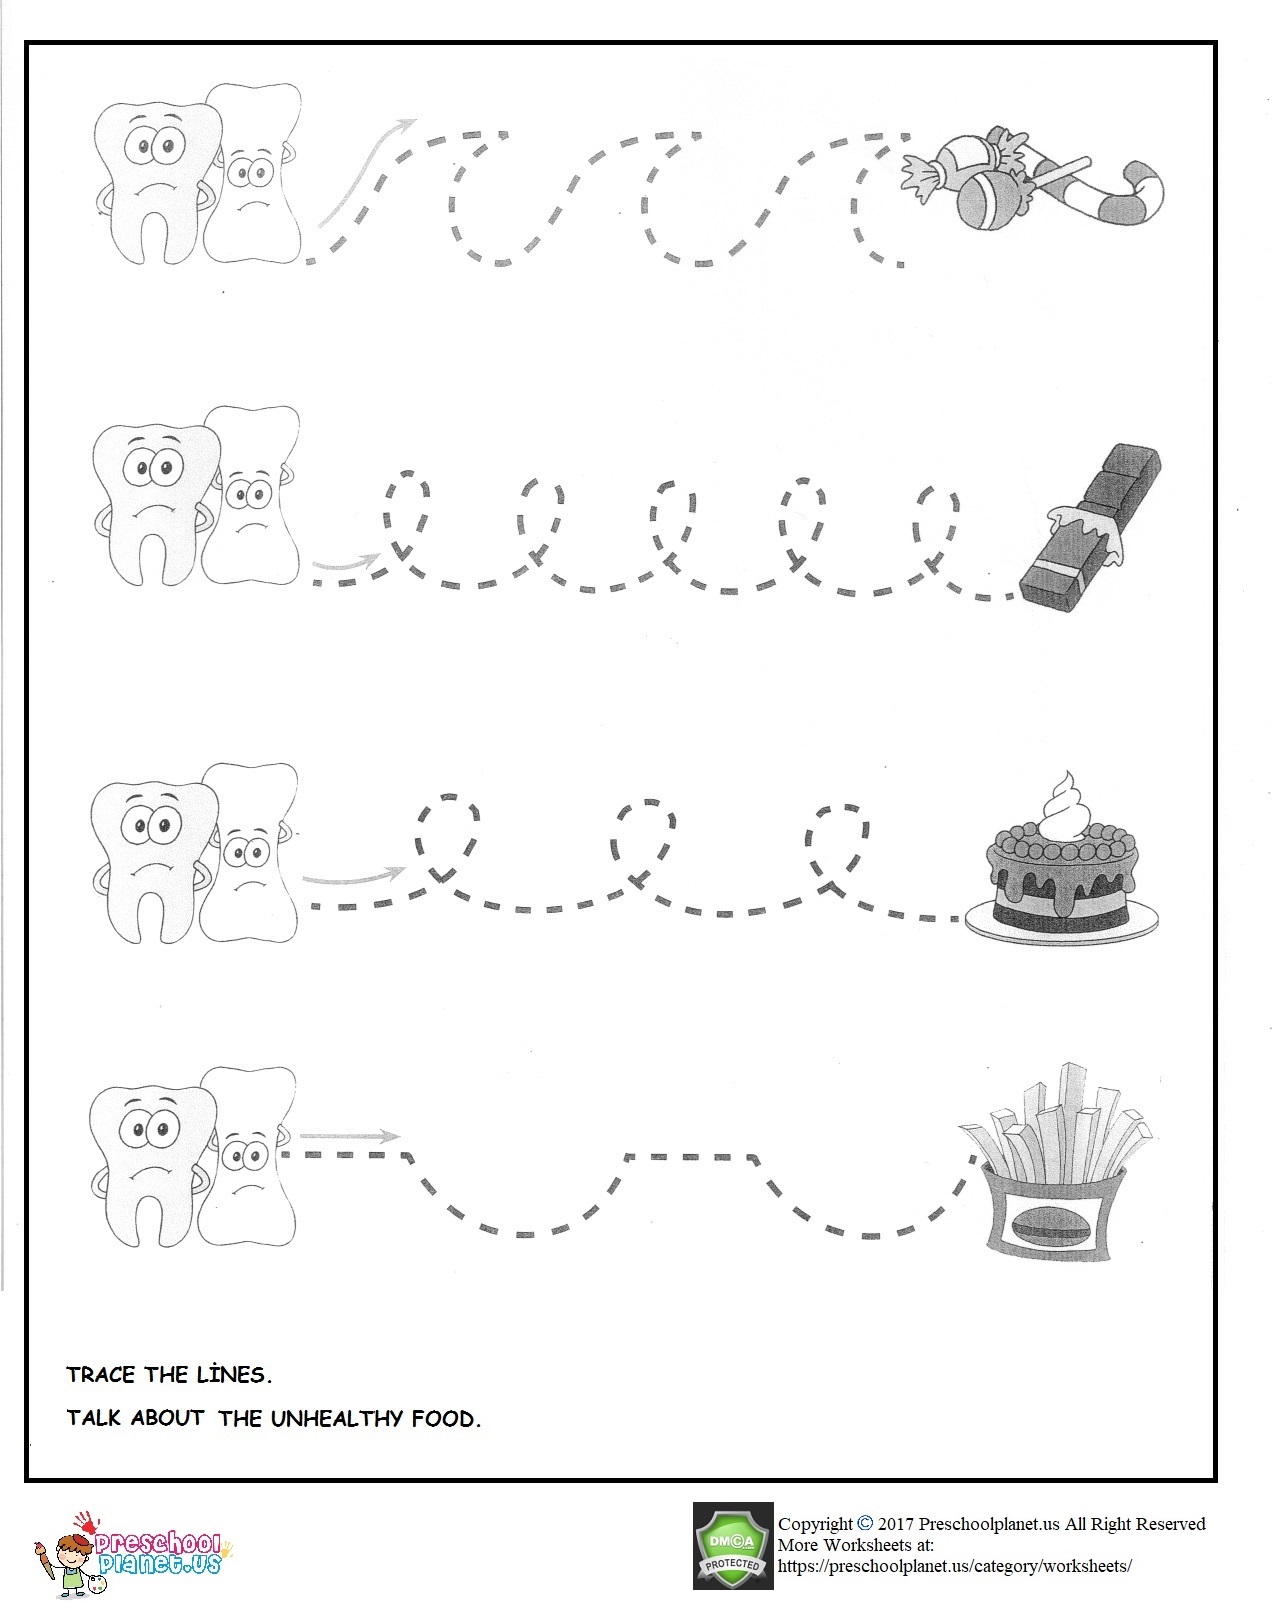 Dental health week worksheet for preschool Preschoolplanet